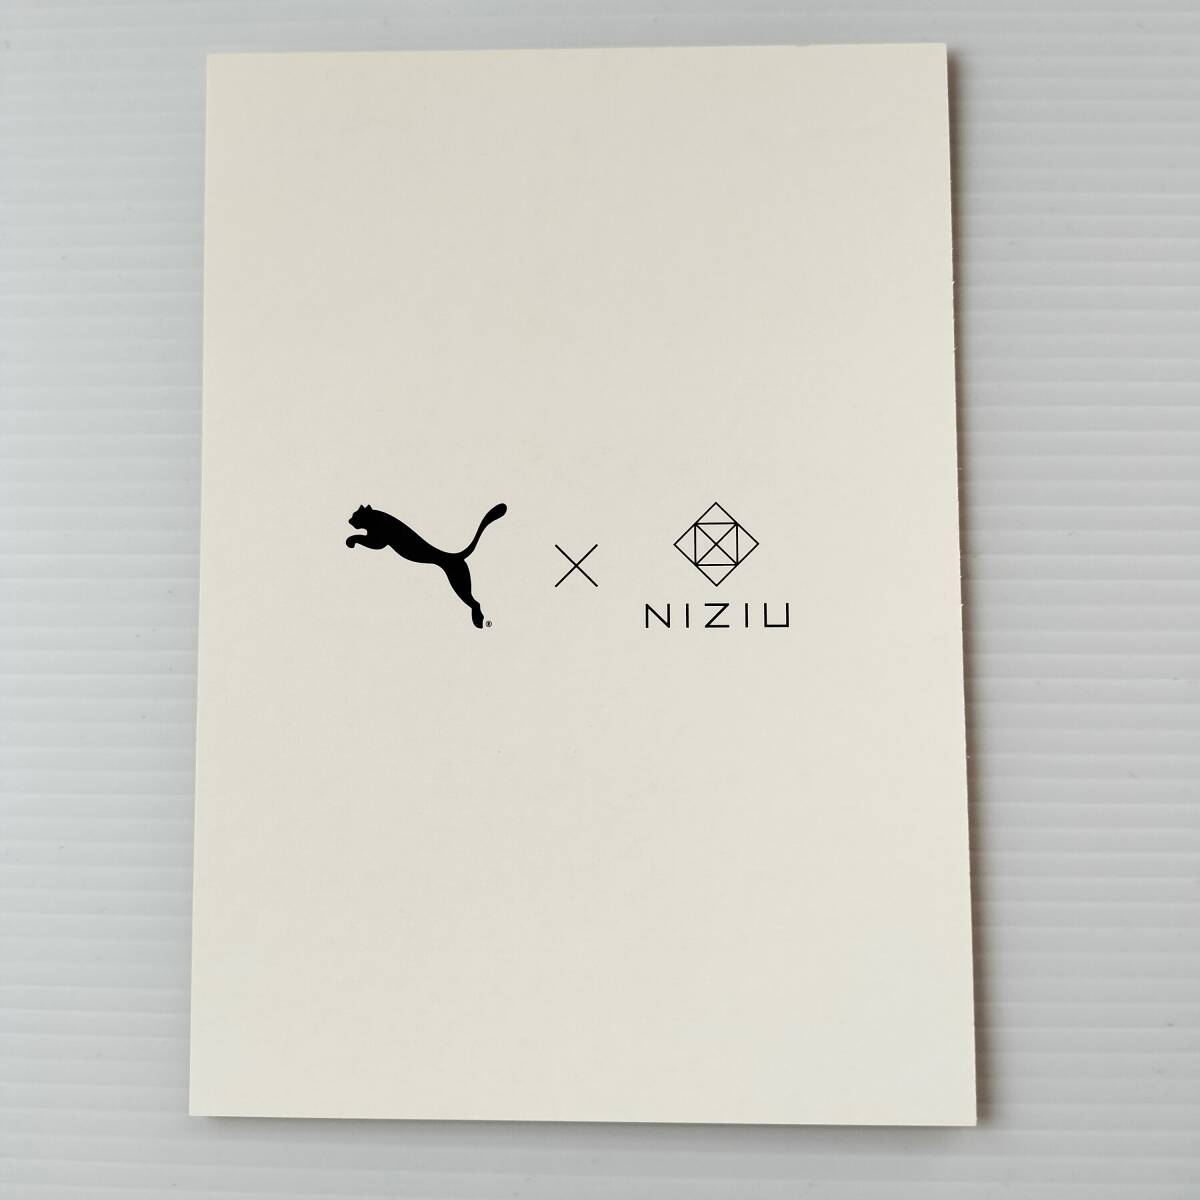 NiziU ミイヒ PUMA ポストカードの画像2